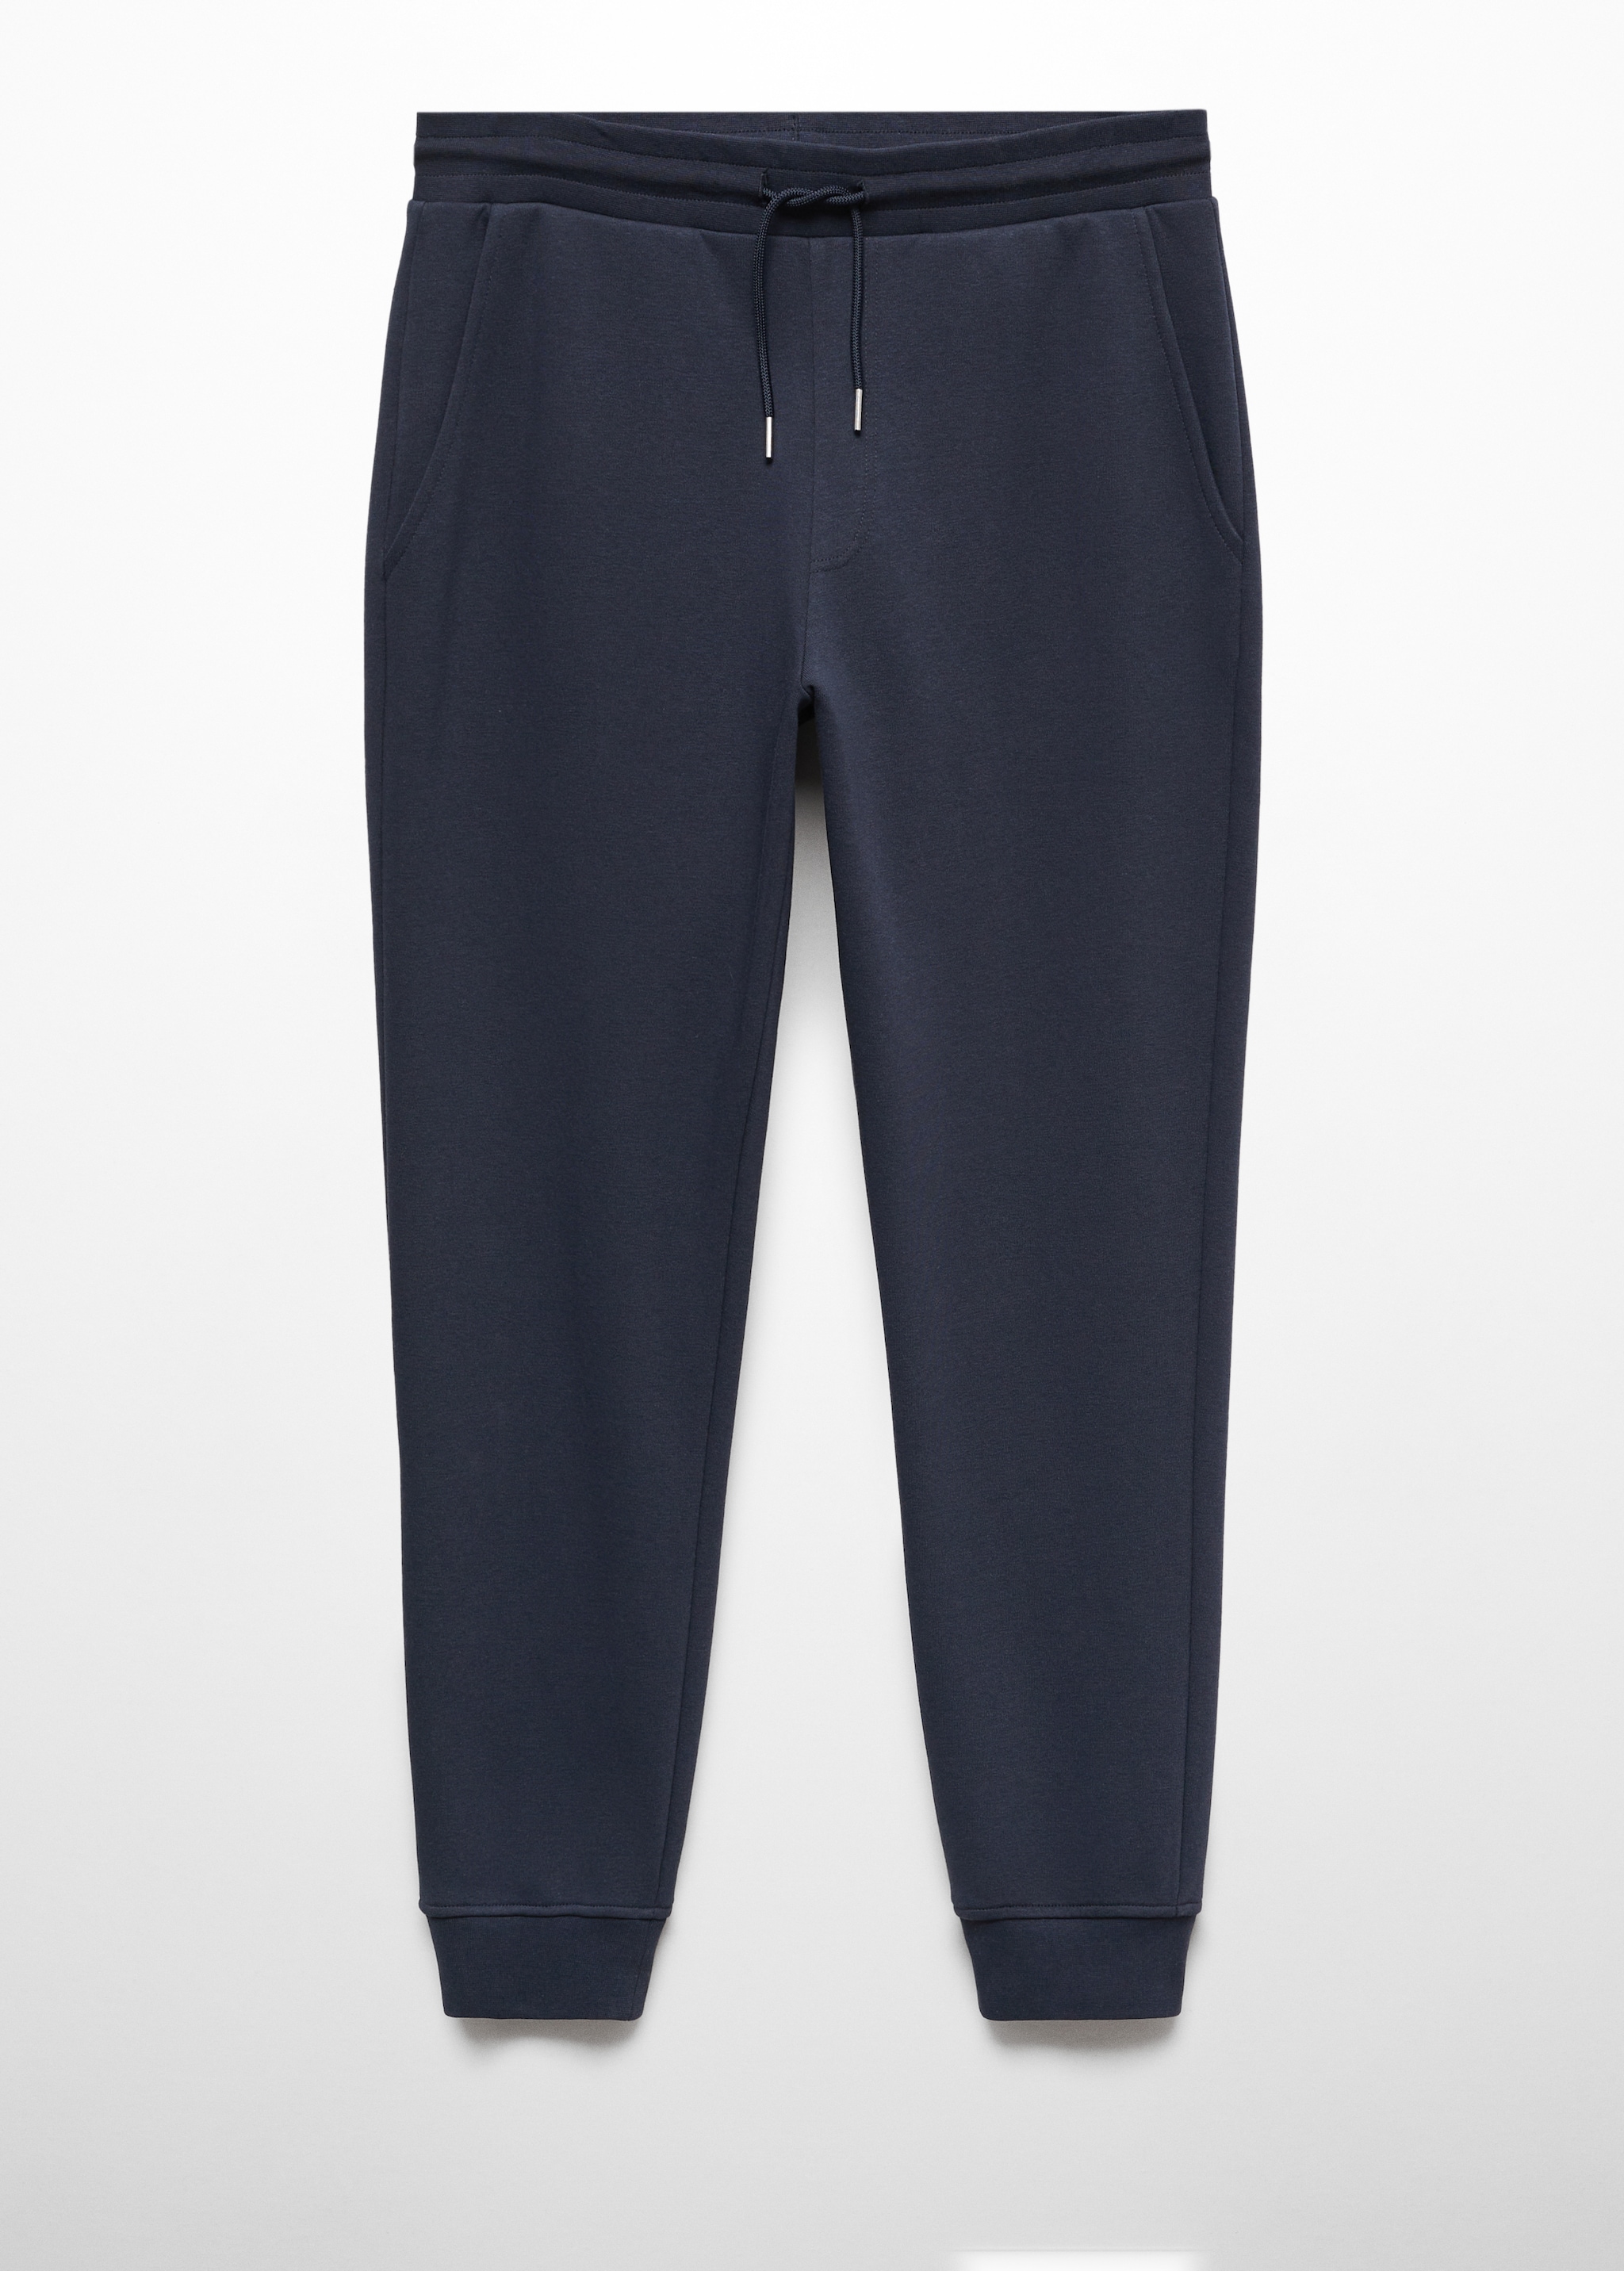 Cotton jogger-style trousers - Προϊόν χωρίς μοντέλο